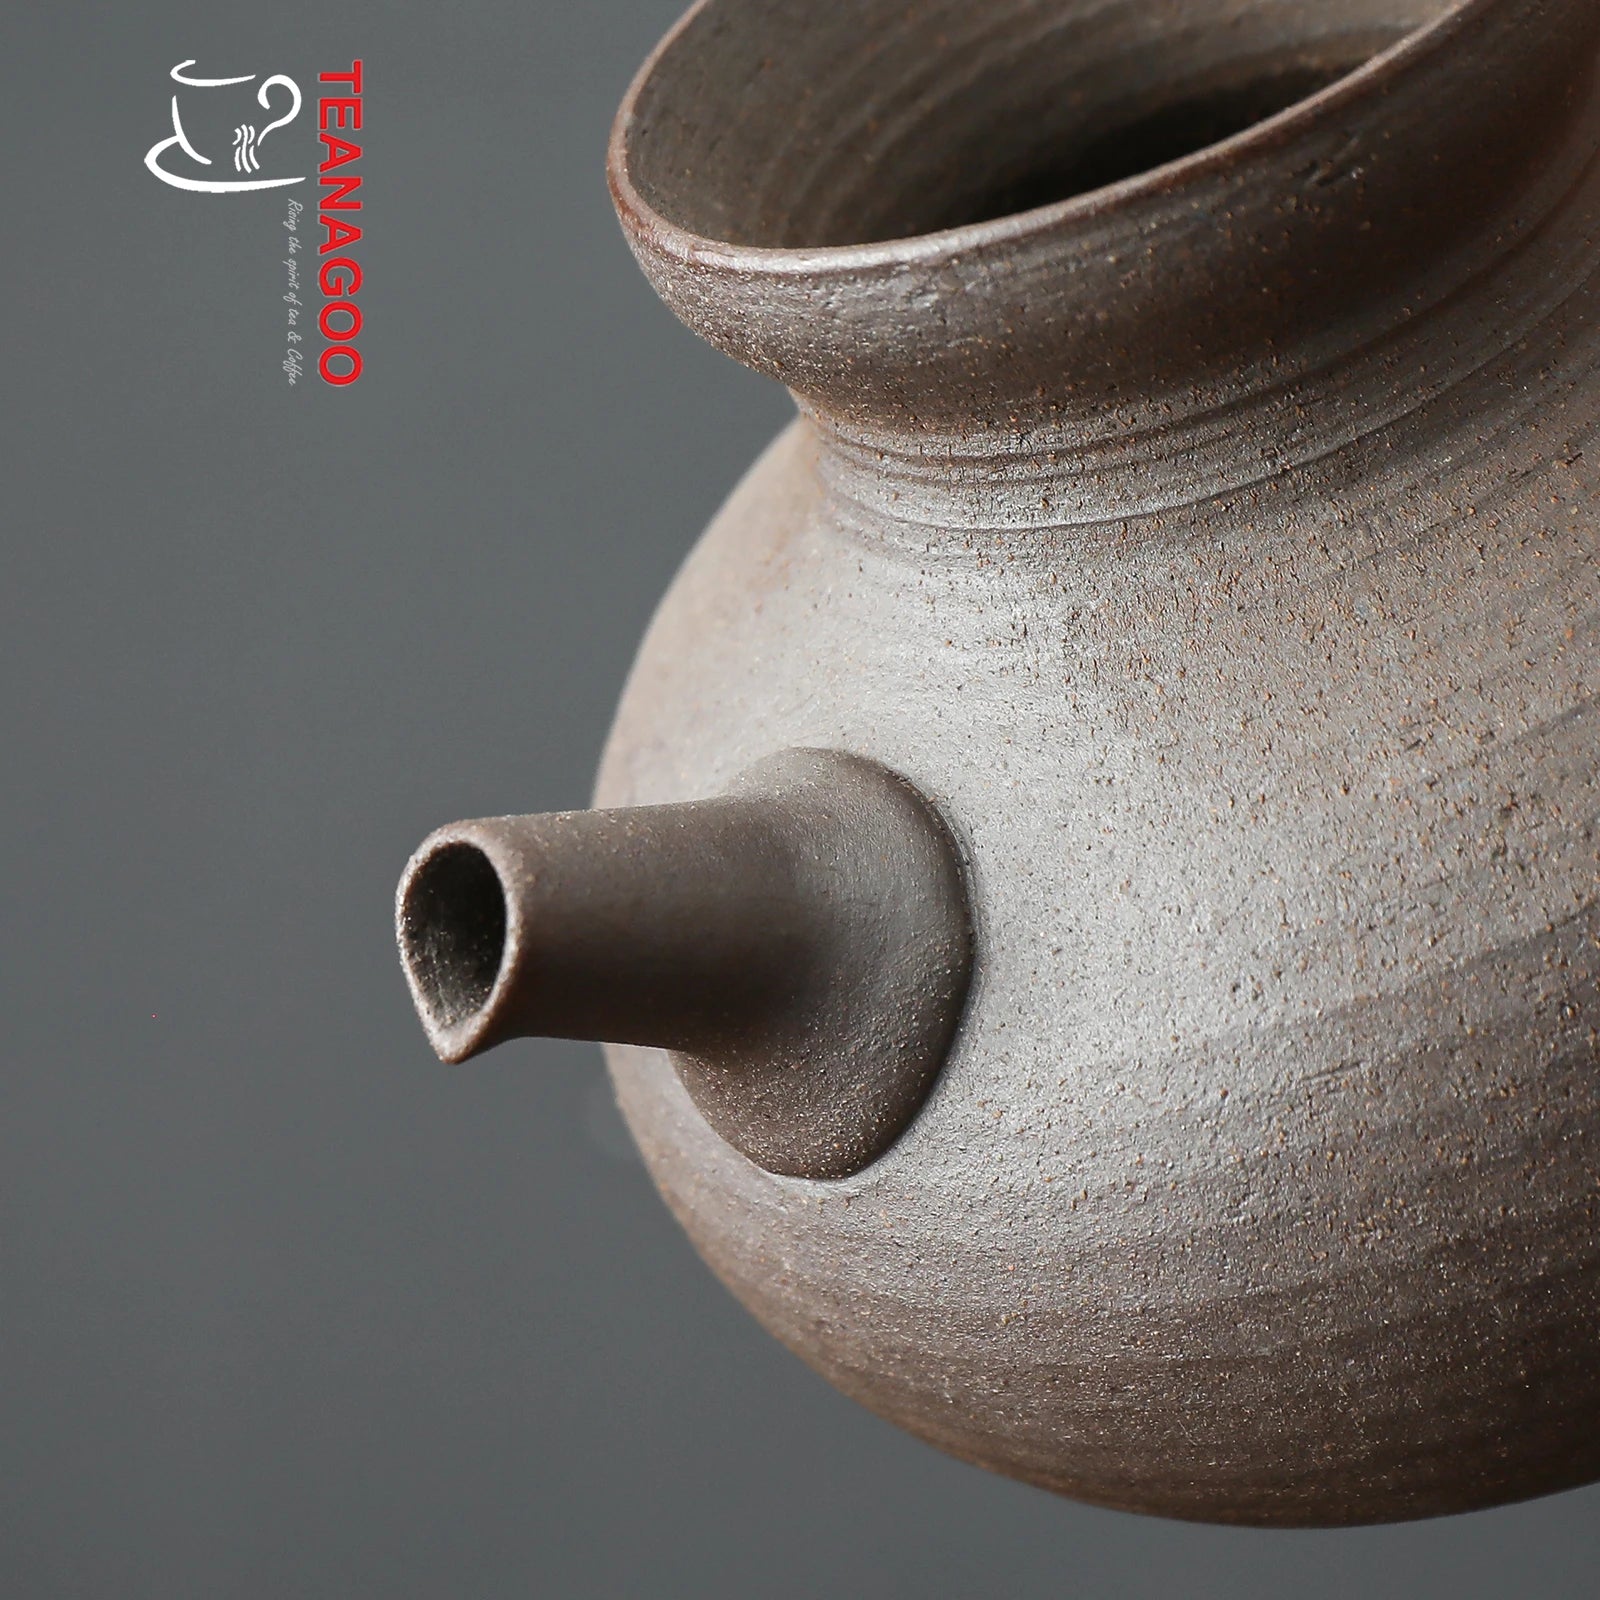 Handmade Pottery Fair Cup 180ml Clay Tea Ware Tea Accessory